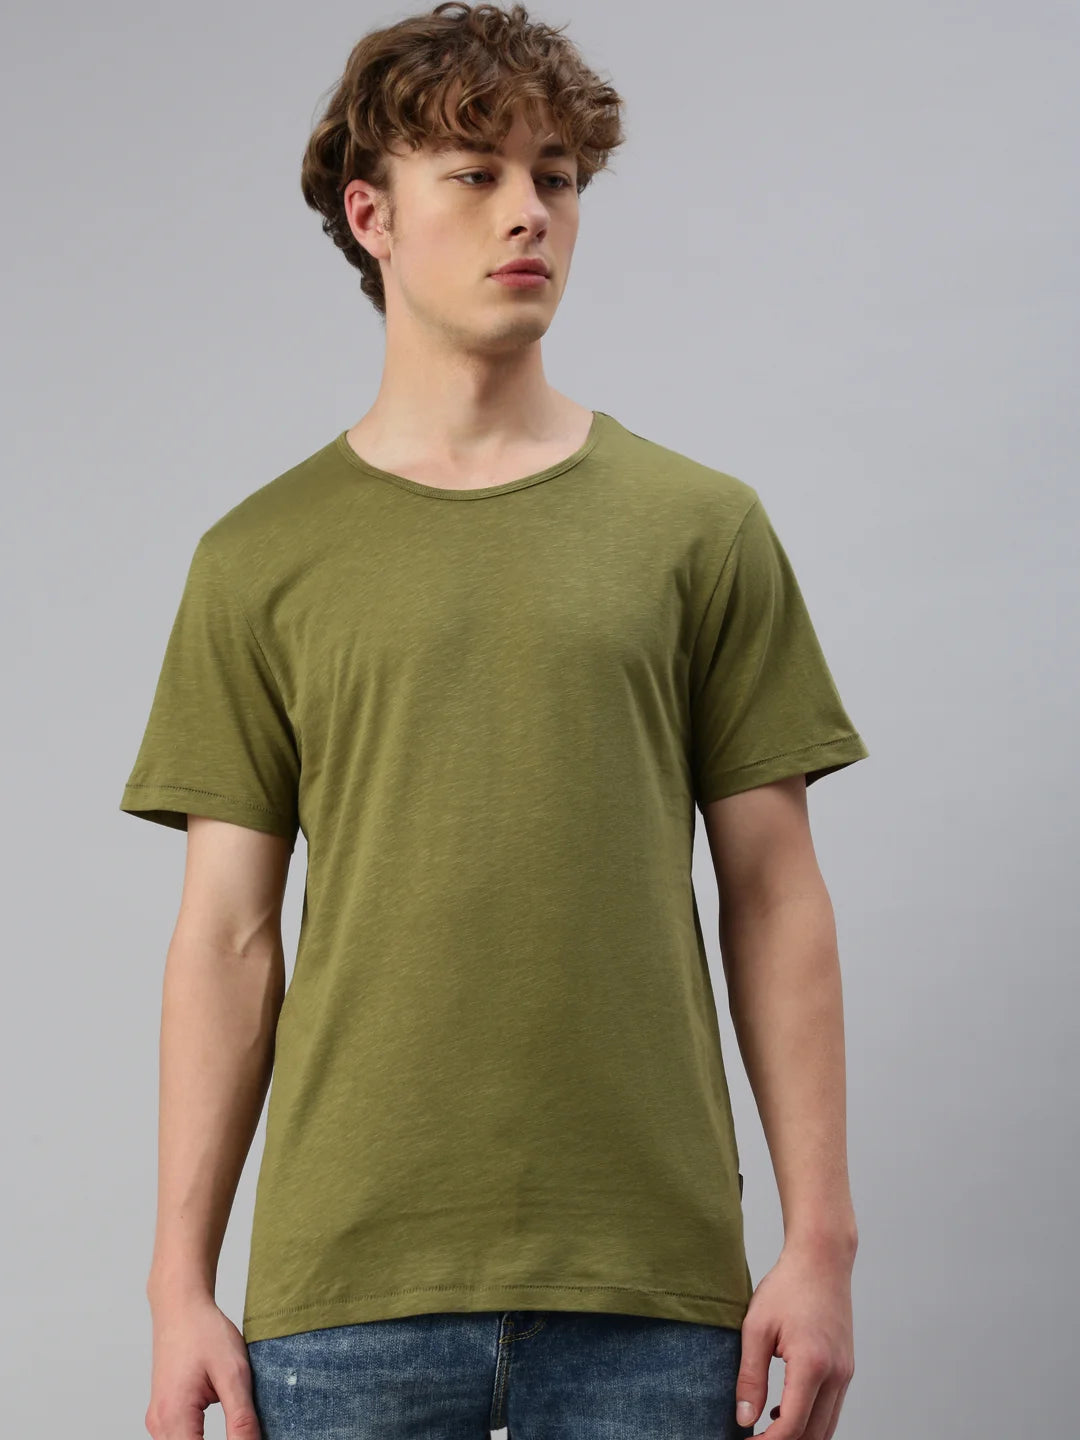 maglietta uomo-damon-cotone organico-scollatura-oliva-indietro